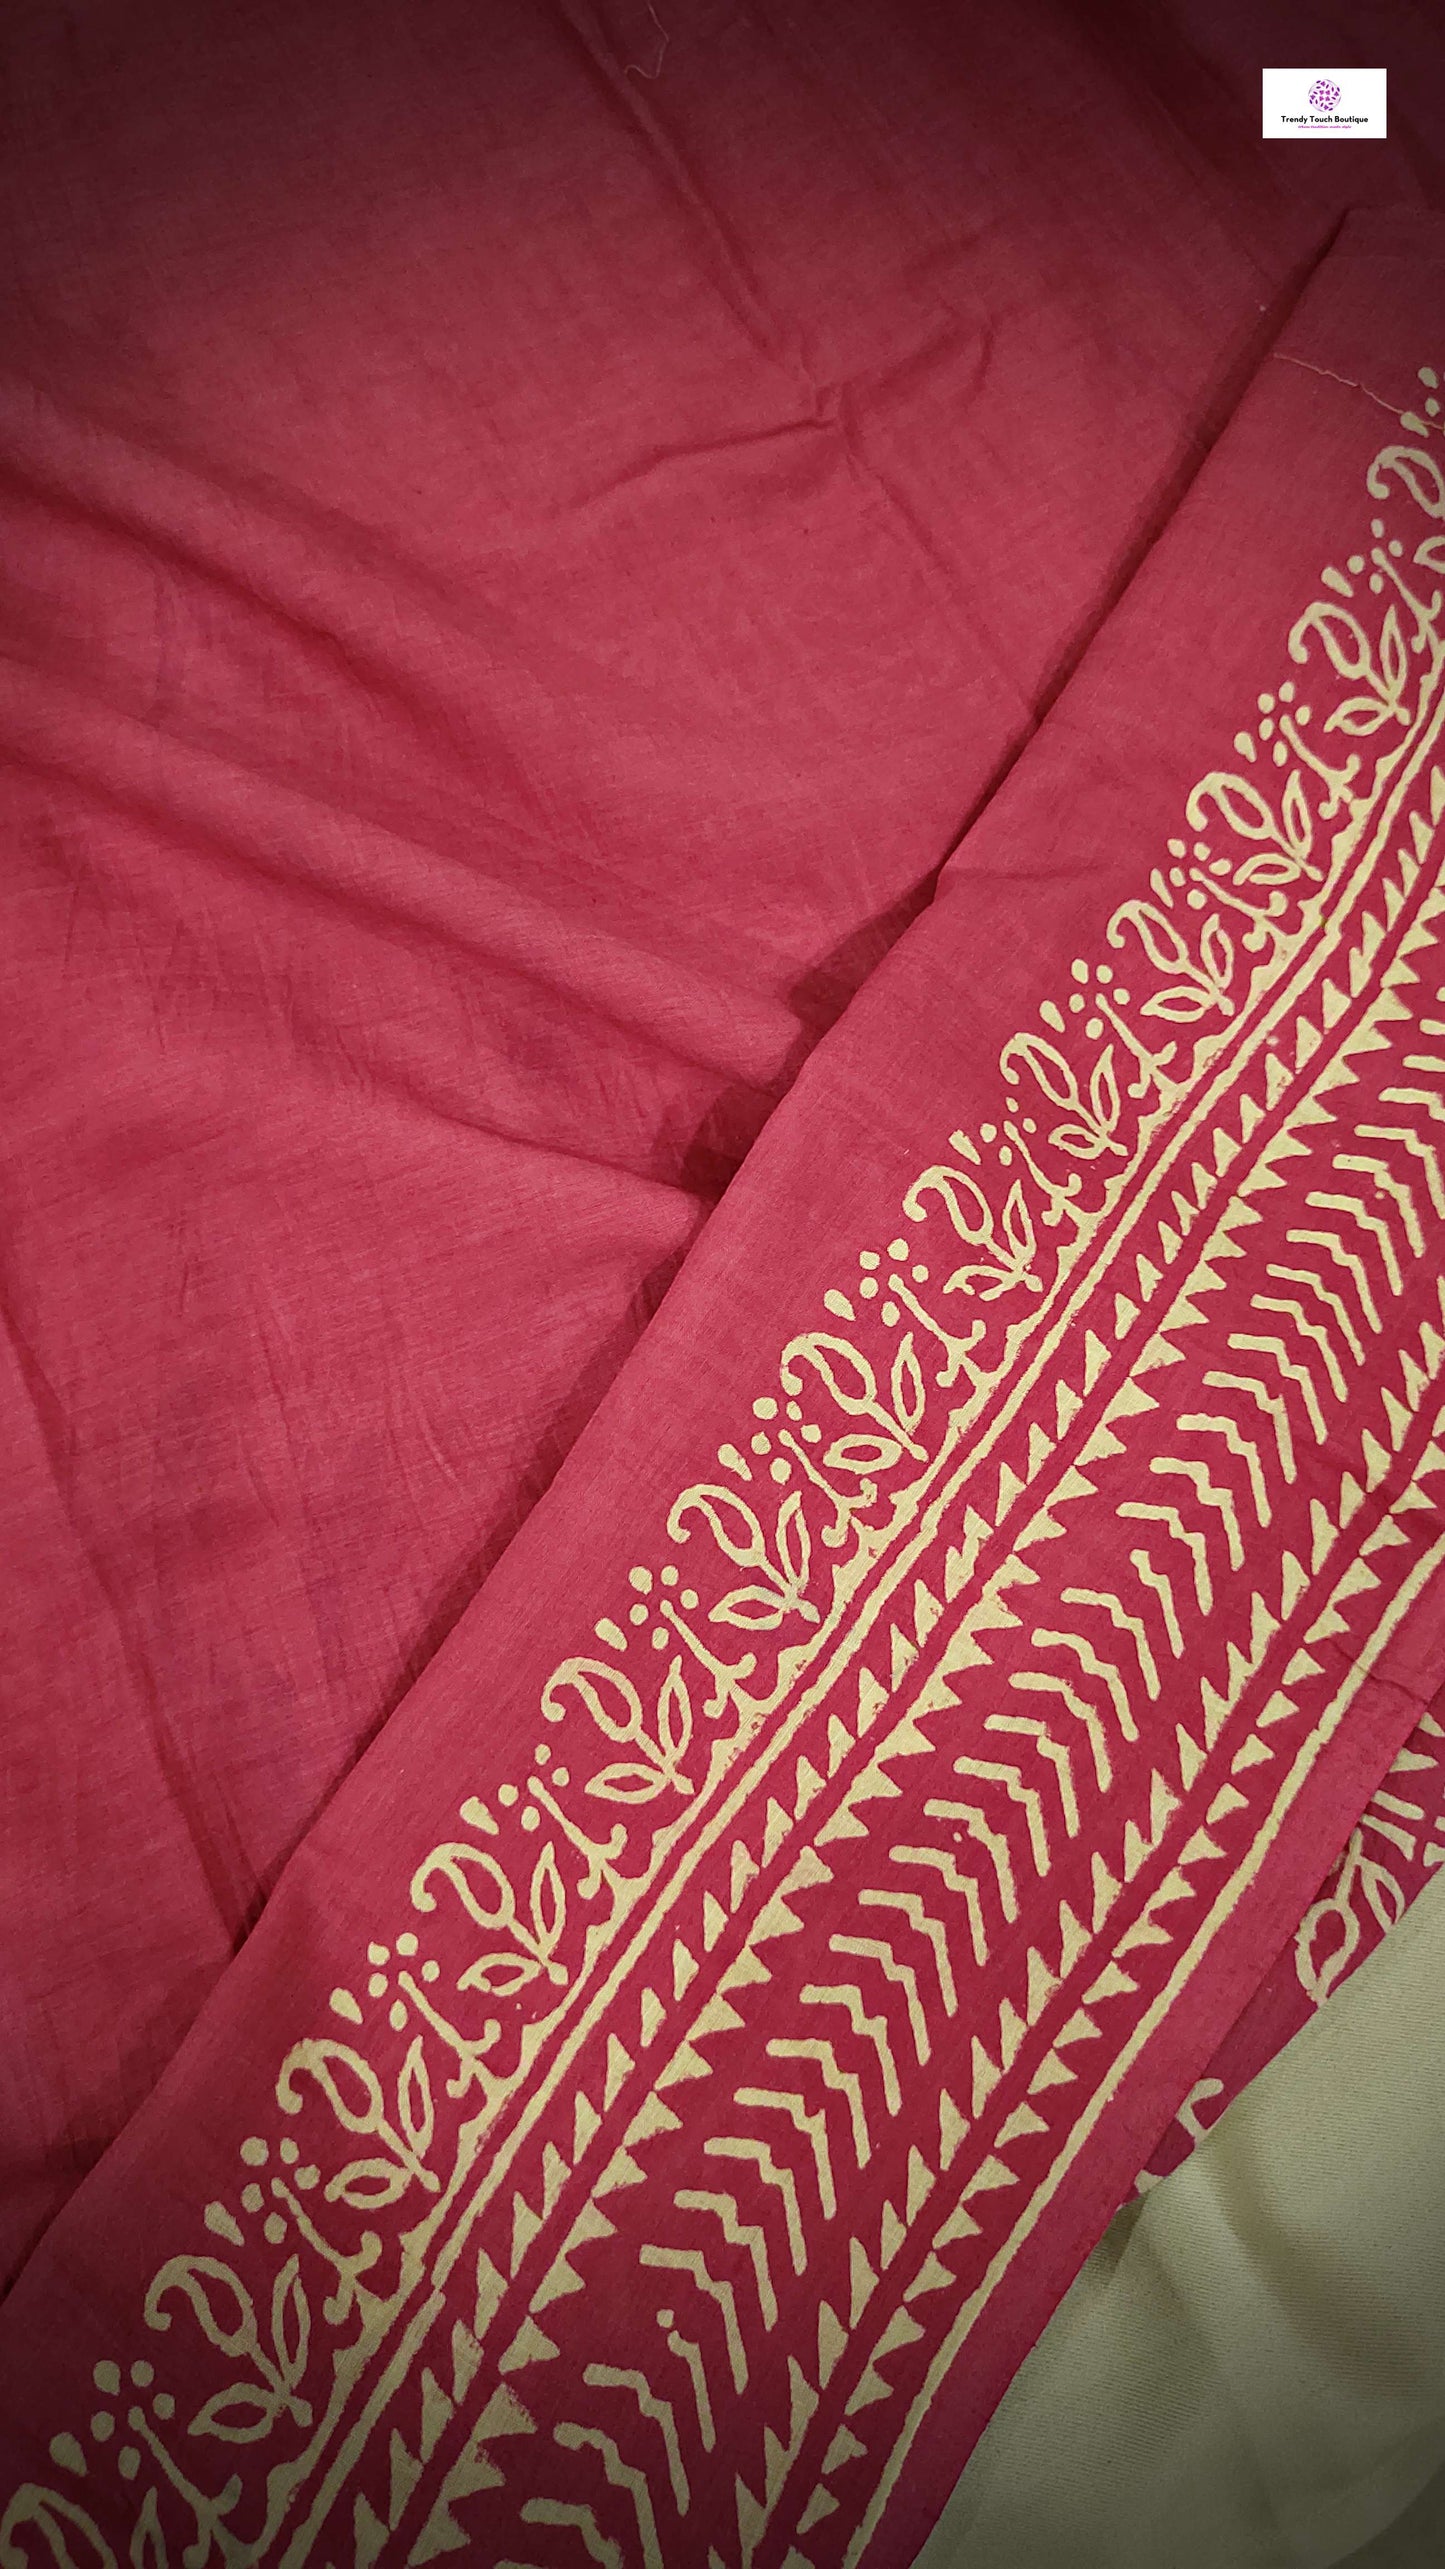 handblock print mulcotton saree best price 1799 online with blouse piece